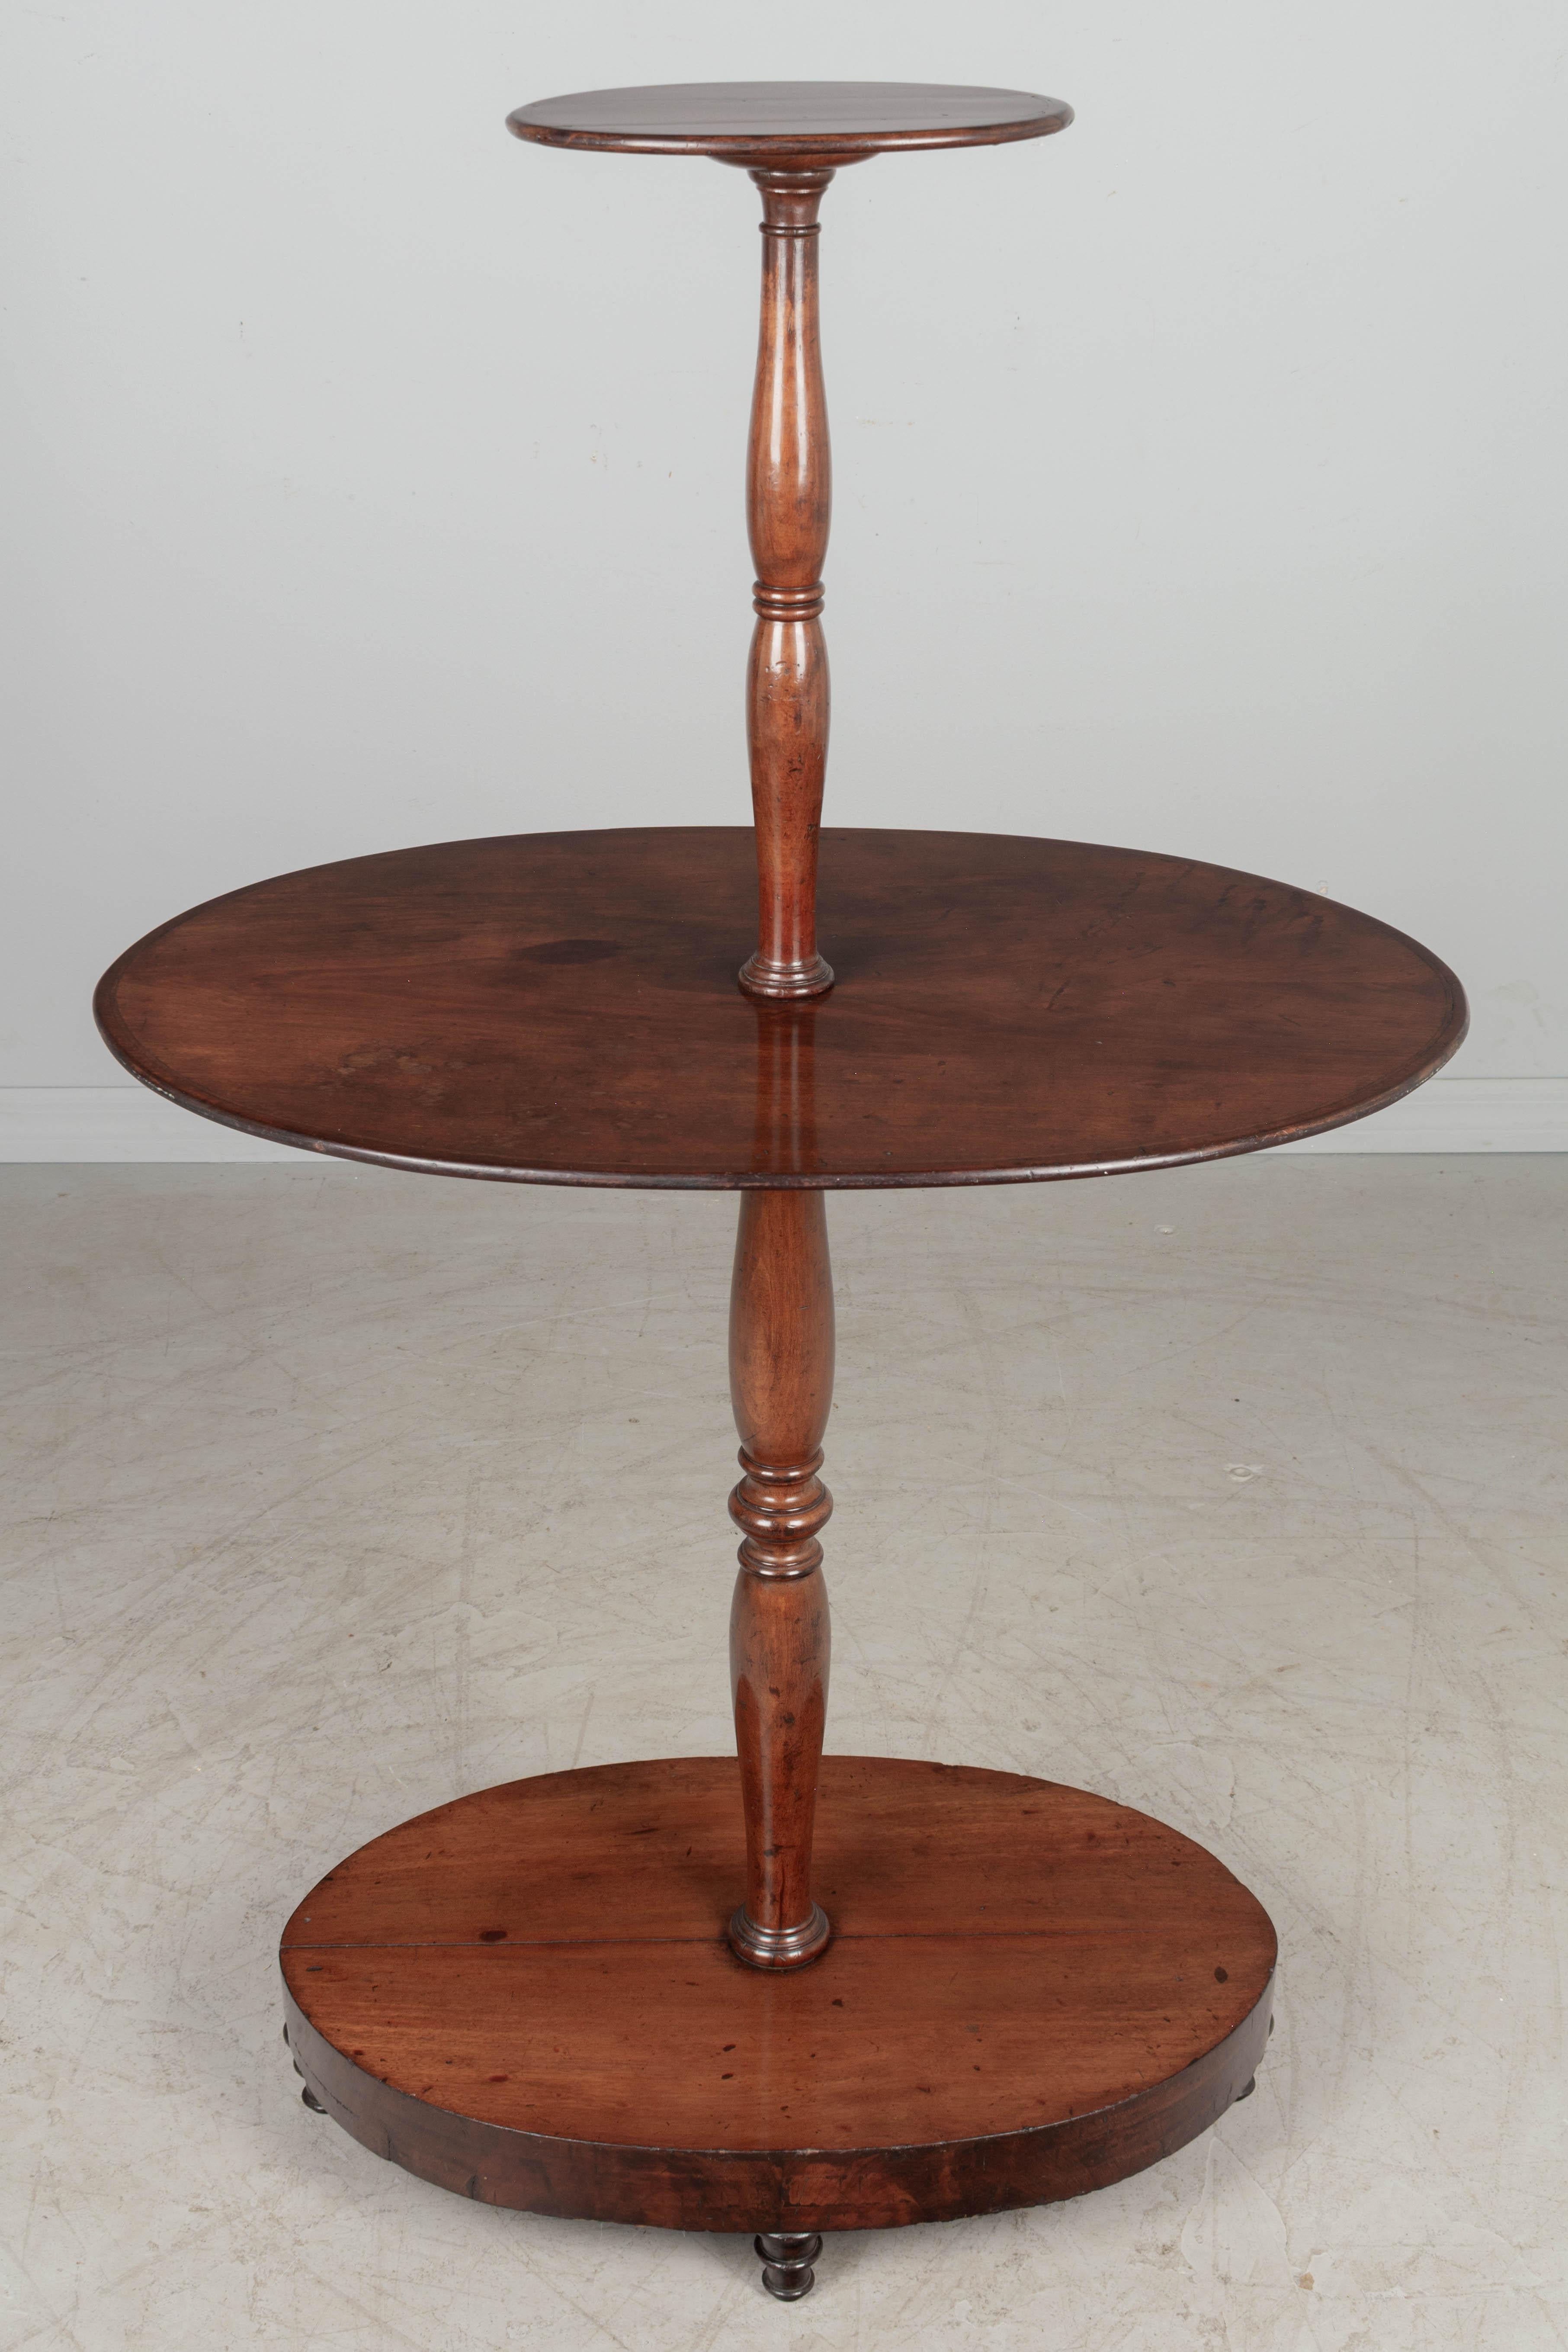 Ein ovaler, gestufter Speiseaufzug aus englischem Mahagoni des späten 19. Jahrhunderts, mit gedrechseltem Mittelpfosten. Ovaler Sockel mit Mahagonifurnier und gedrechselten Füßen. Dieser Tisch wird für den Versand per 